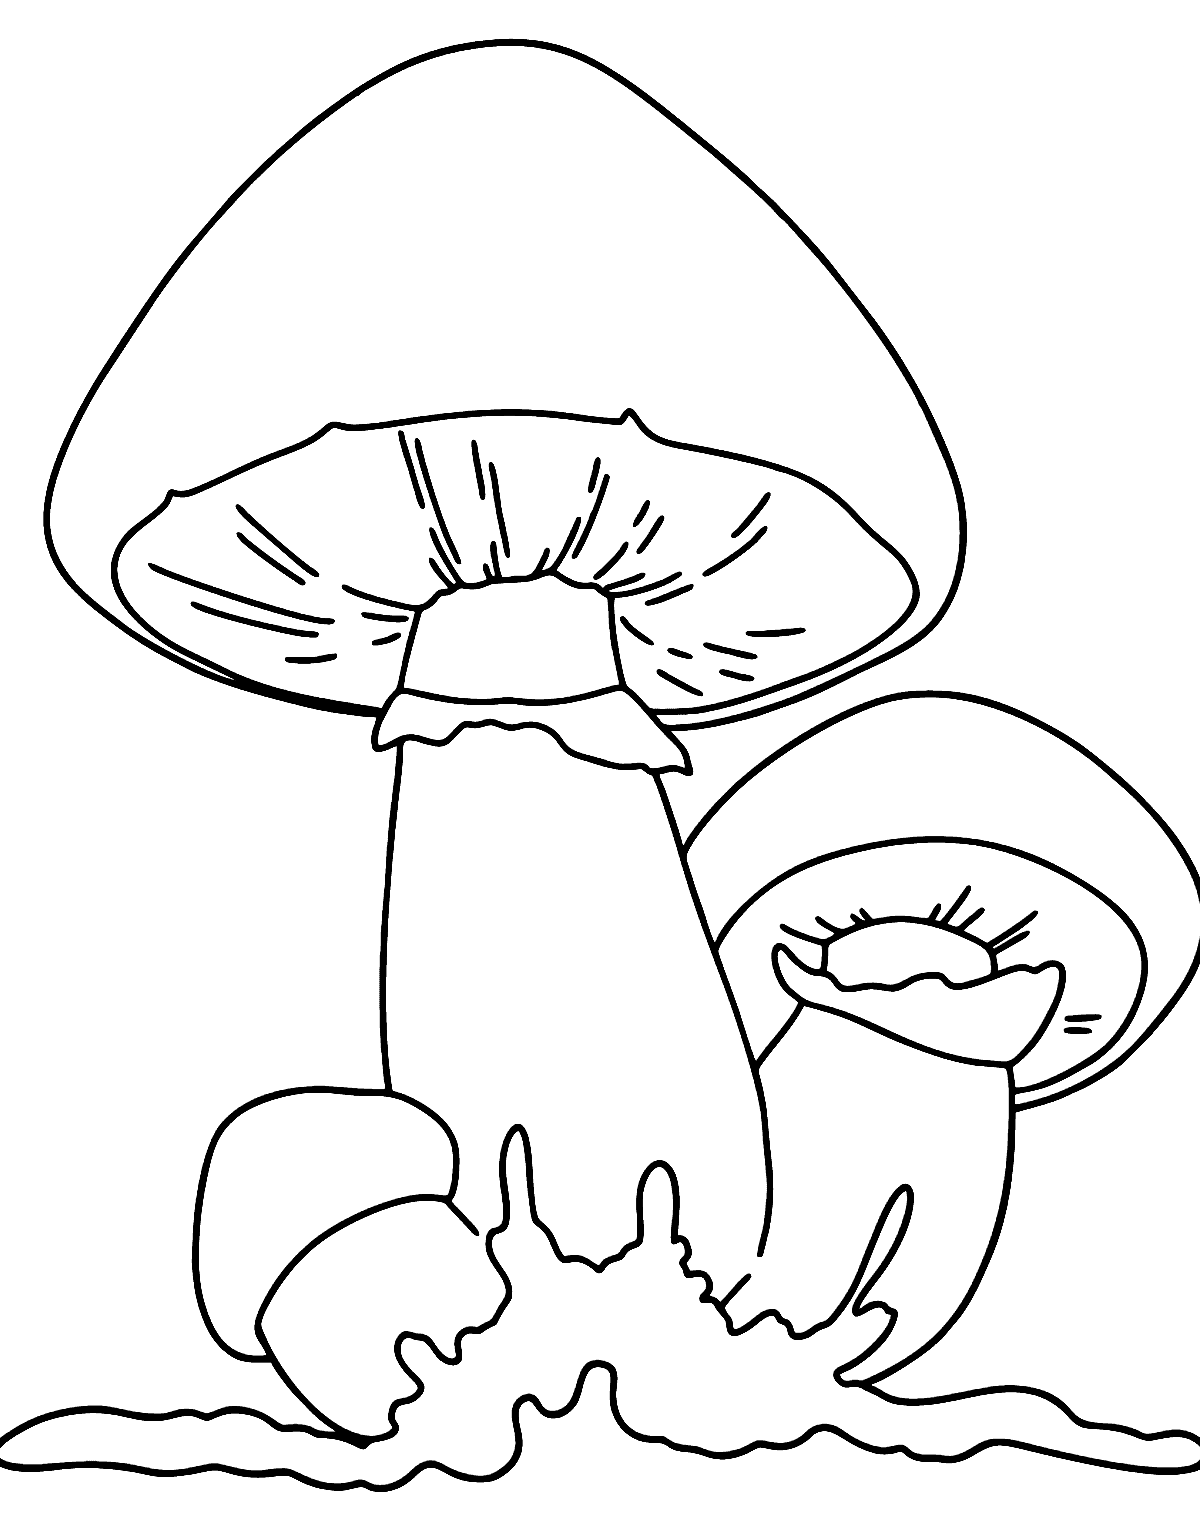 Fogli di tre funghi di Mushroom